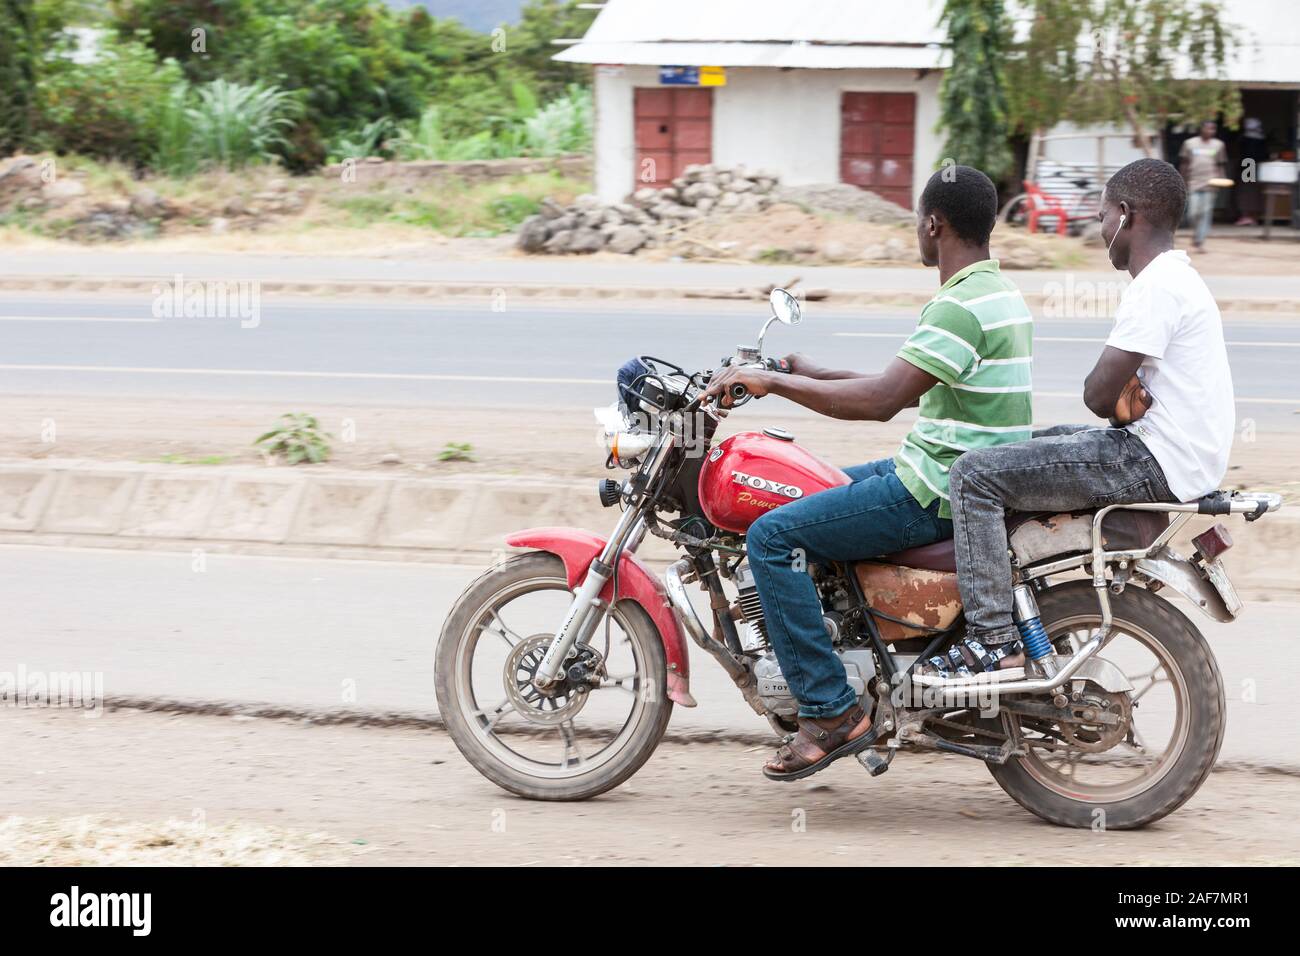 La Tanzanie, le MTO wa Mbu Scène de rue, les jeunes hommes sur moto, dans des vêtements décontractés. Banque D'Images